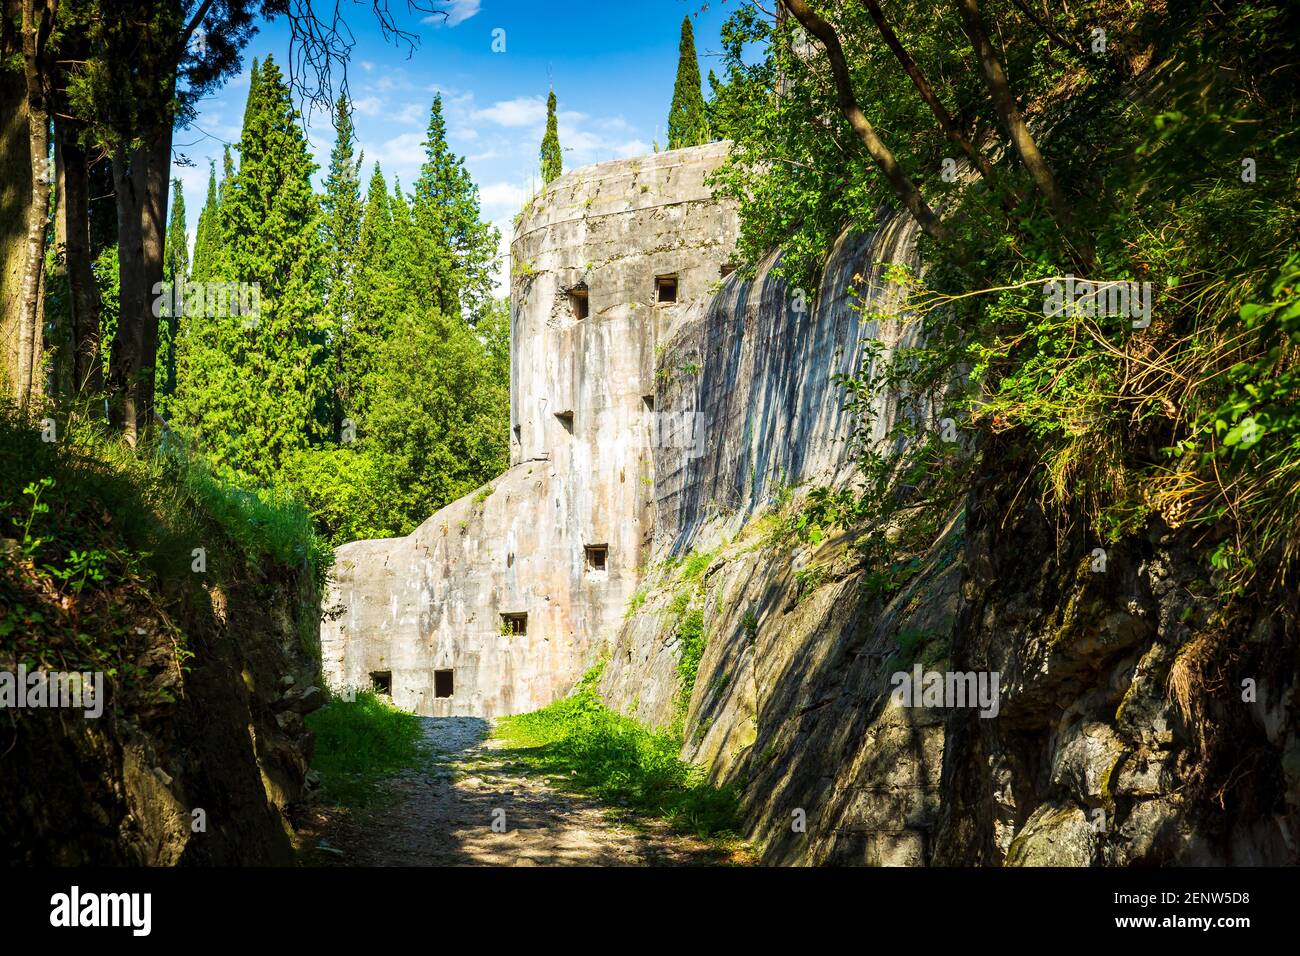 Le rovine di una fortezza bunker vicino a Riva del Garda, Italia. Popolare marchio di terra e una bella escursione in montagna con una splendida vista sul lago. Foto Stock